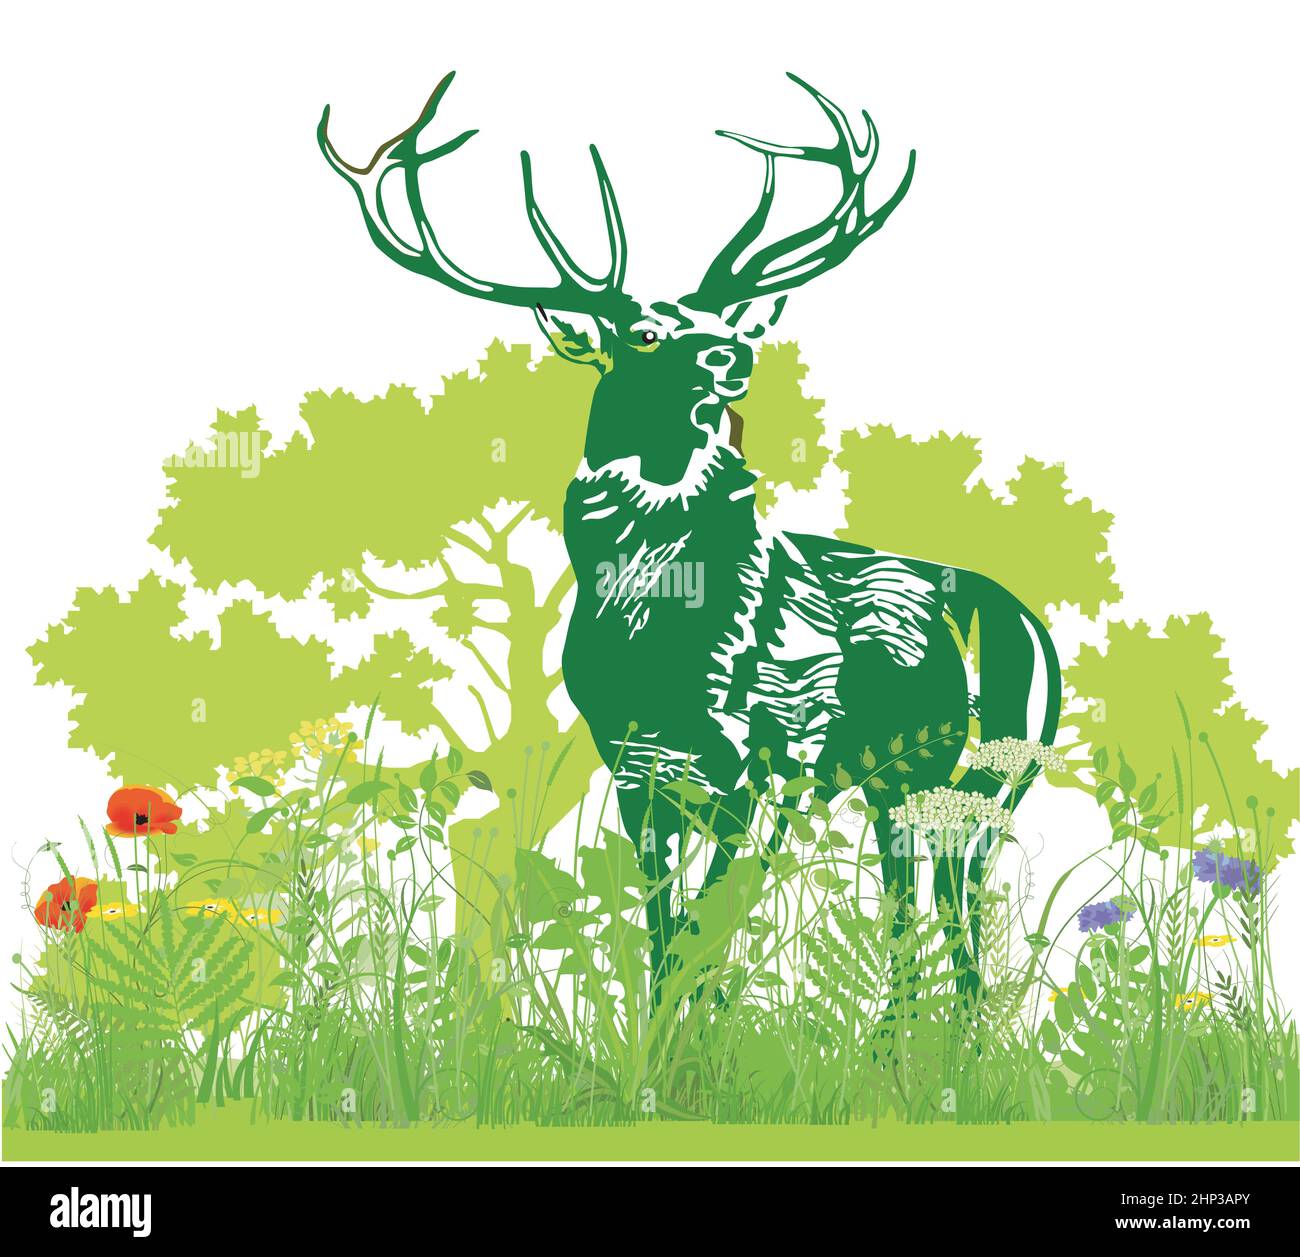 Deer in the meadow illustration Stock Vector